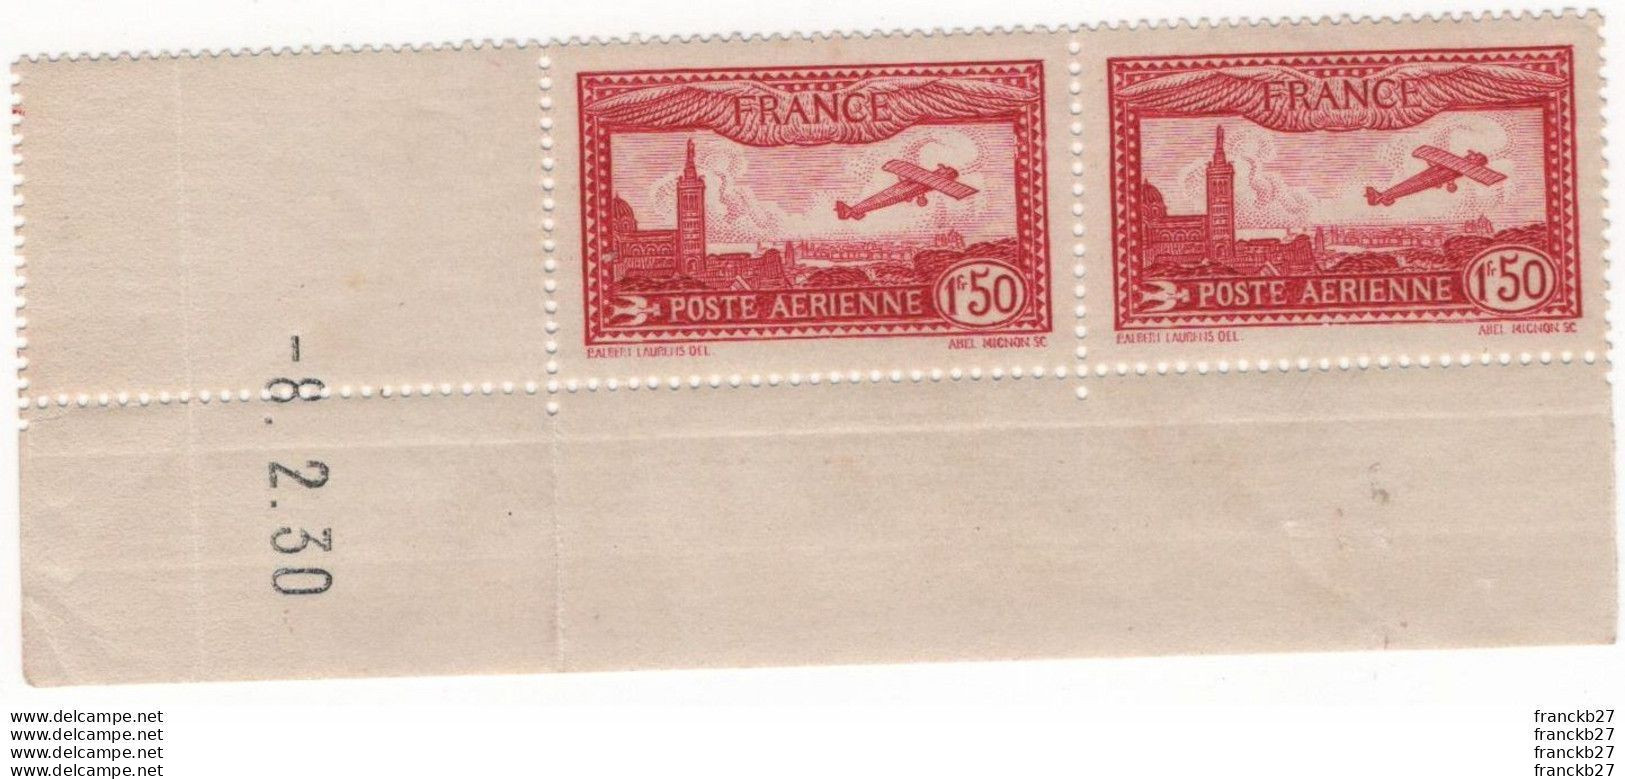 France Poste Aérienne - YT 5 - Avion Survolant Marseille 1 Fr 50 - Bloc De Deux Timbres Coins Datés - 1930 - 1927-1959 Nuevos